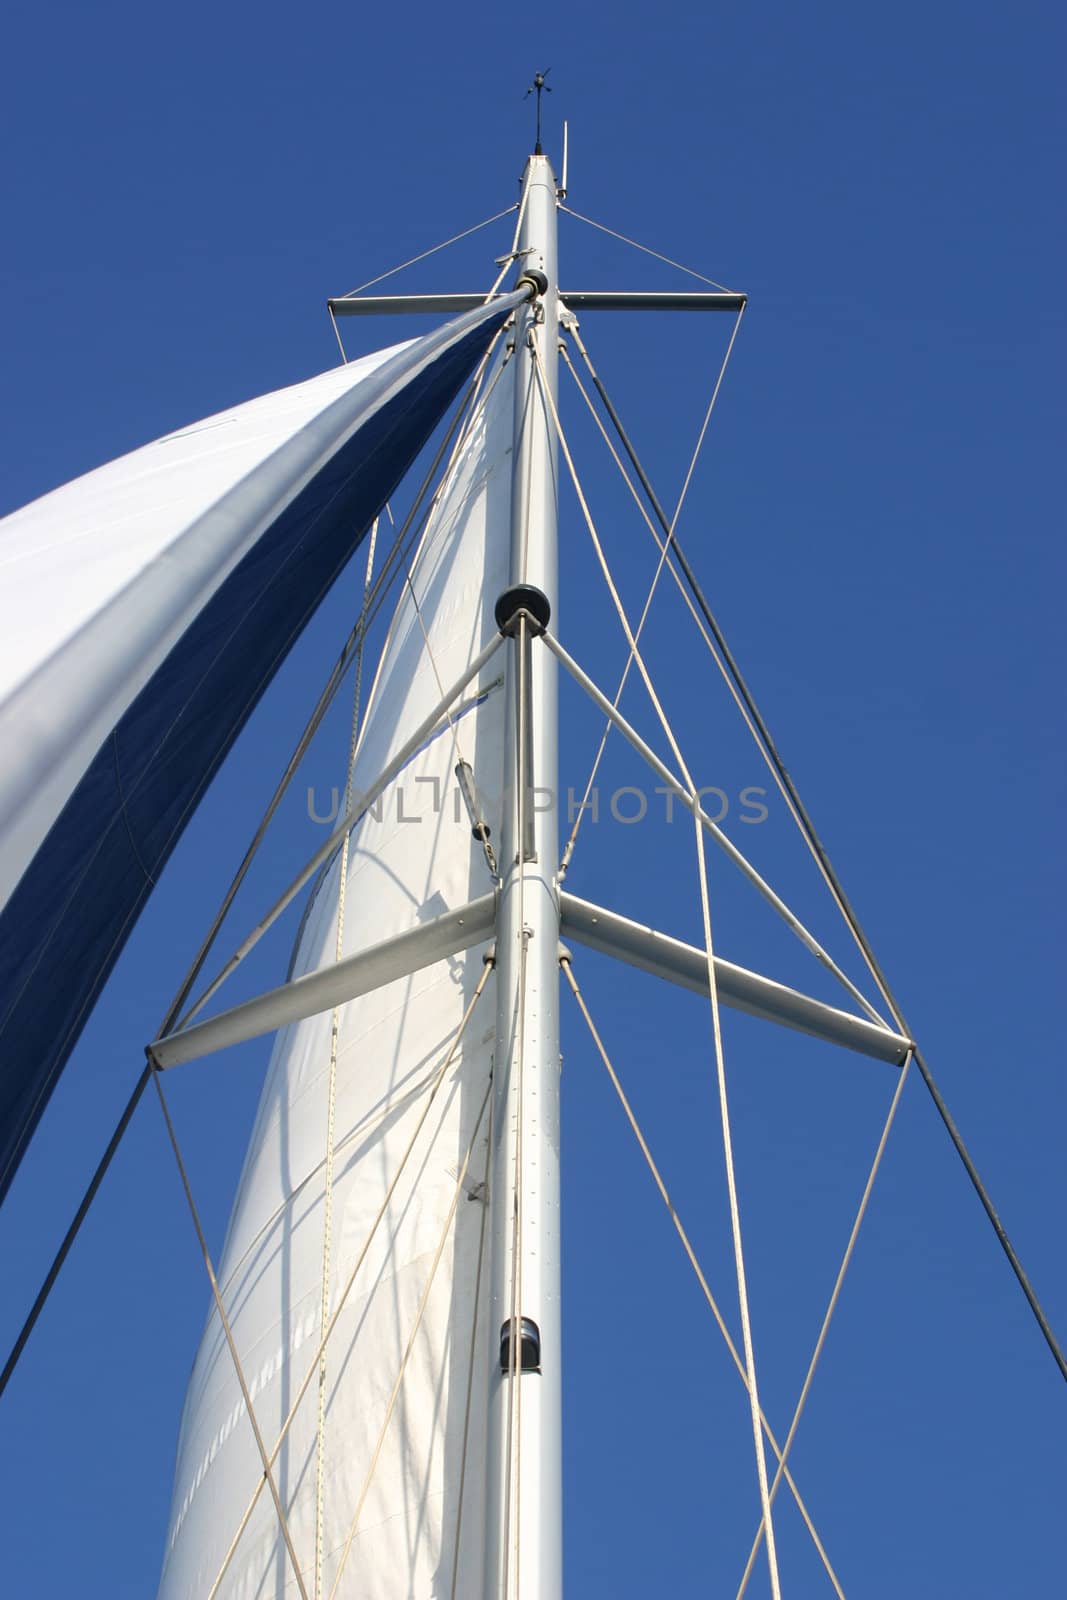 sailing mast by cynoclub